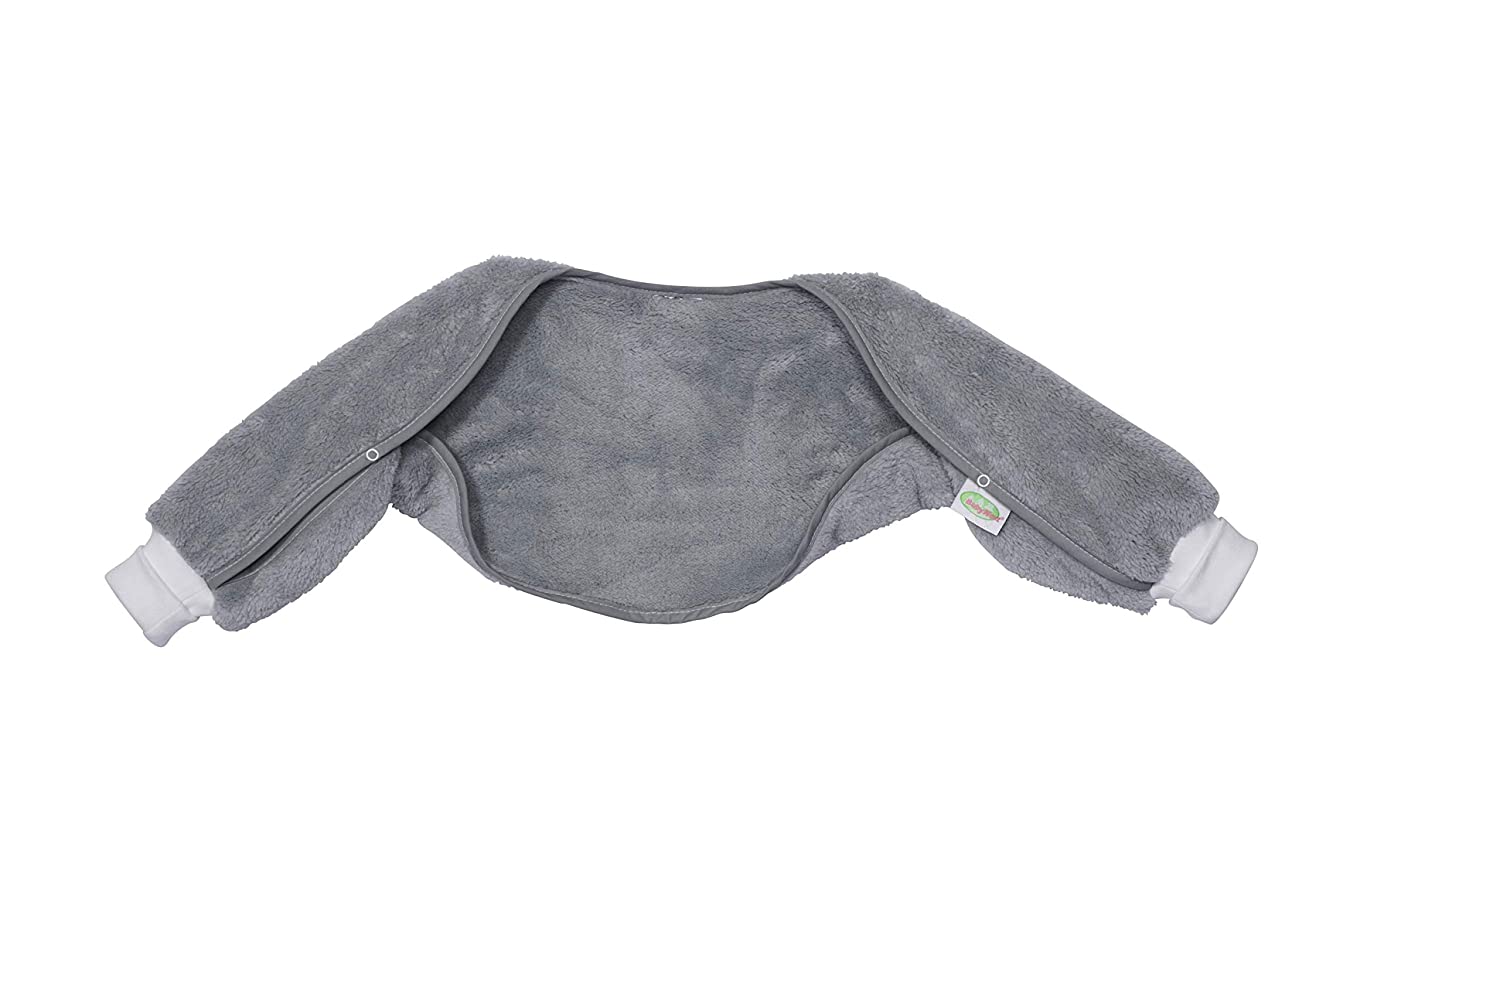 Odenwälder Ärmelinchen | Sleeping Bag With Sleeves Baby Sleeping Bags 110 G